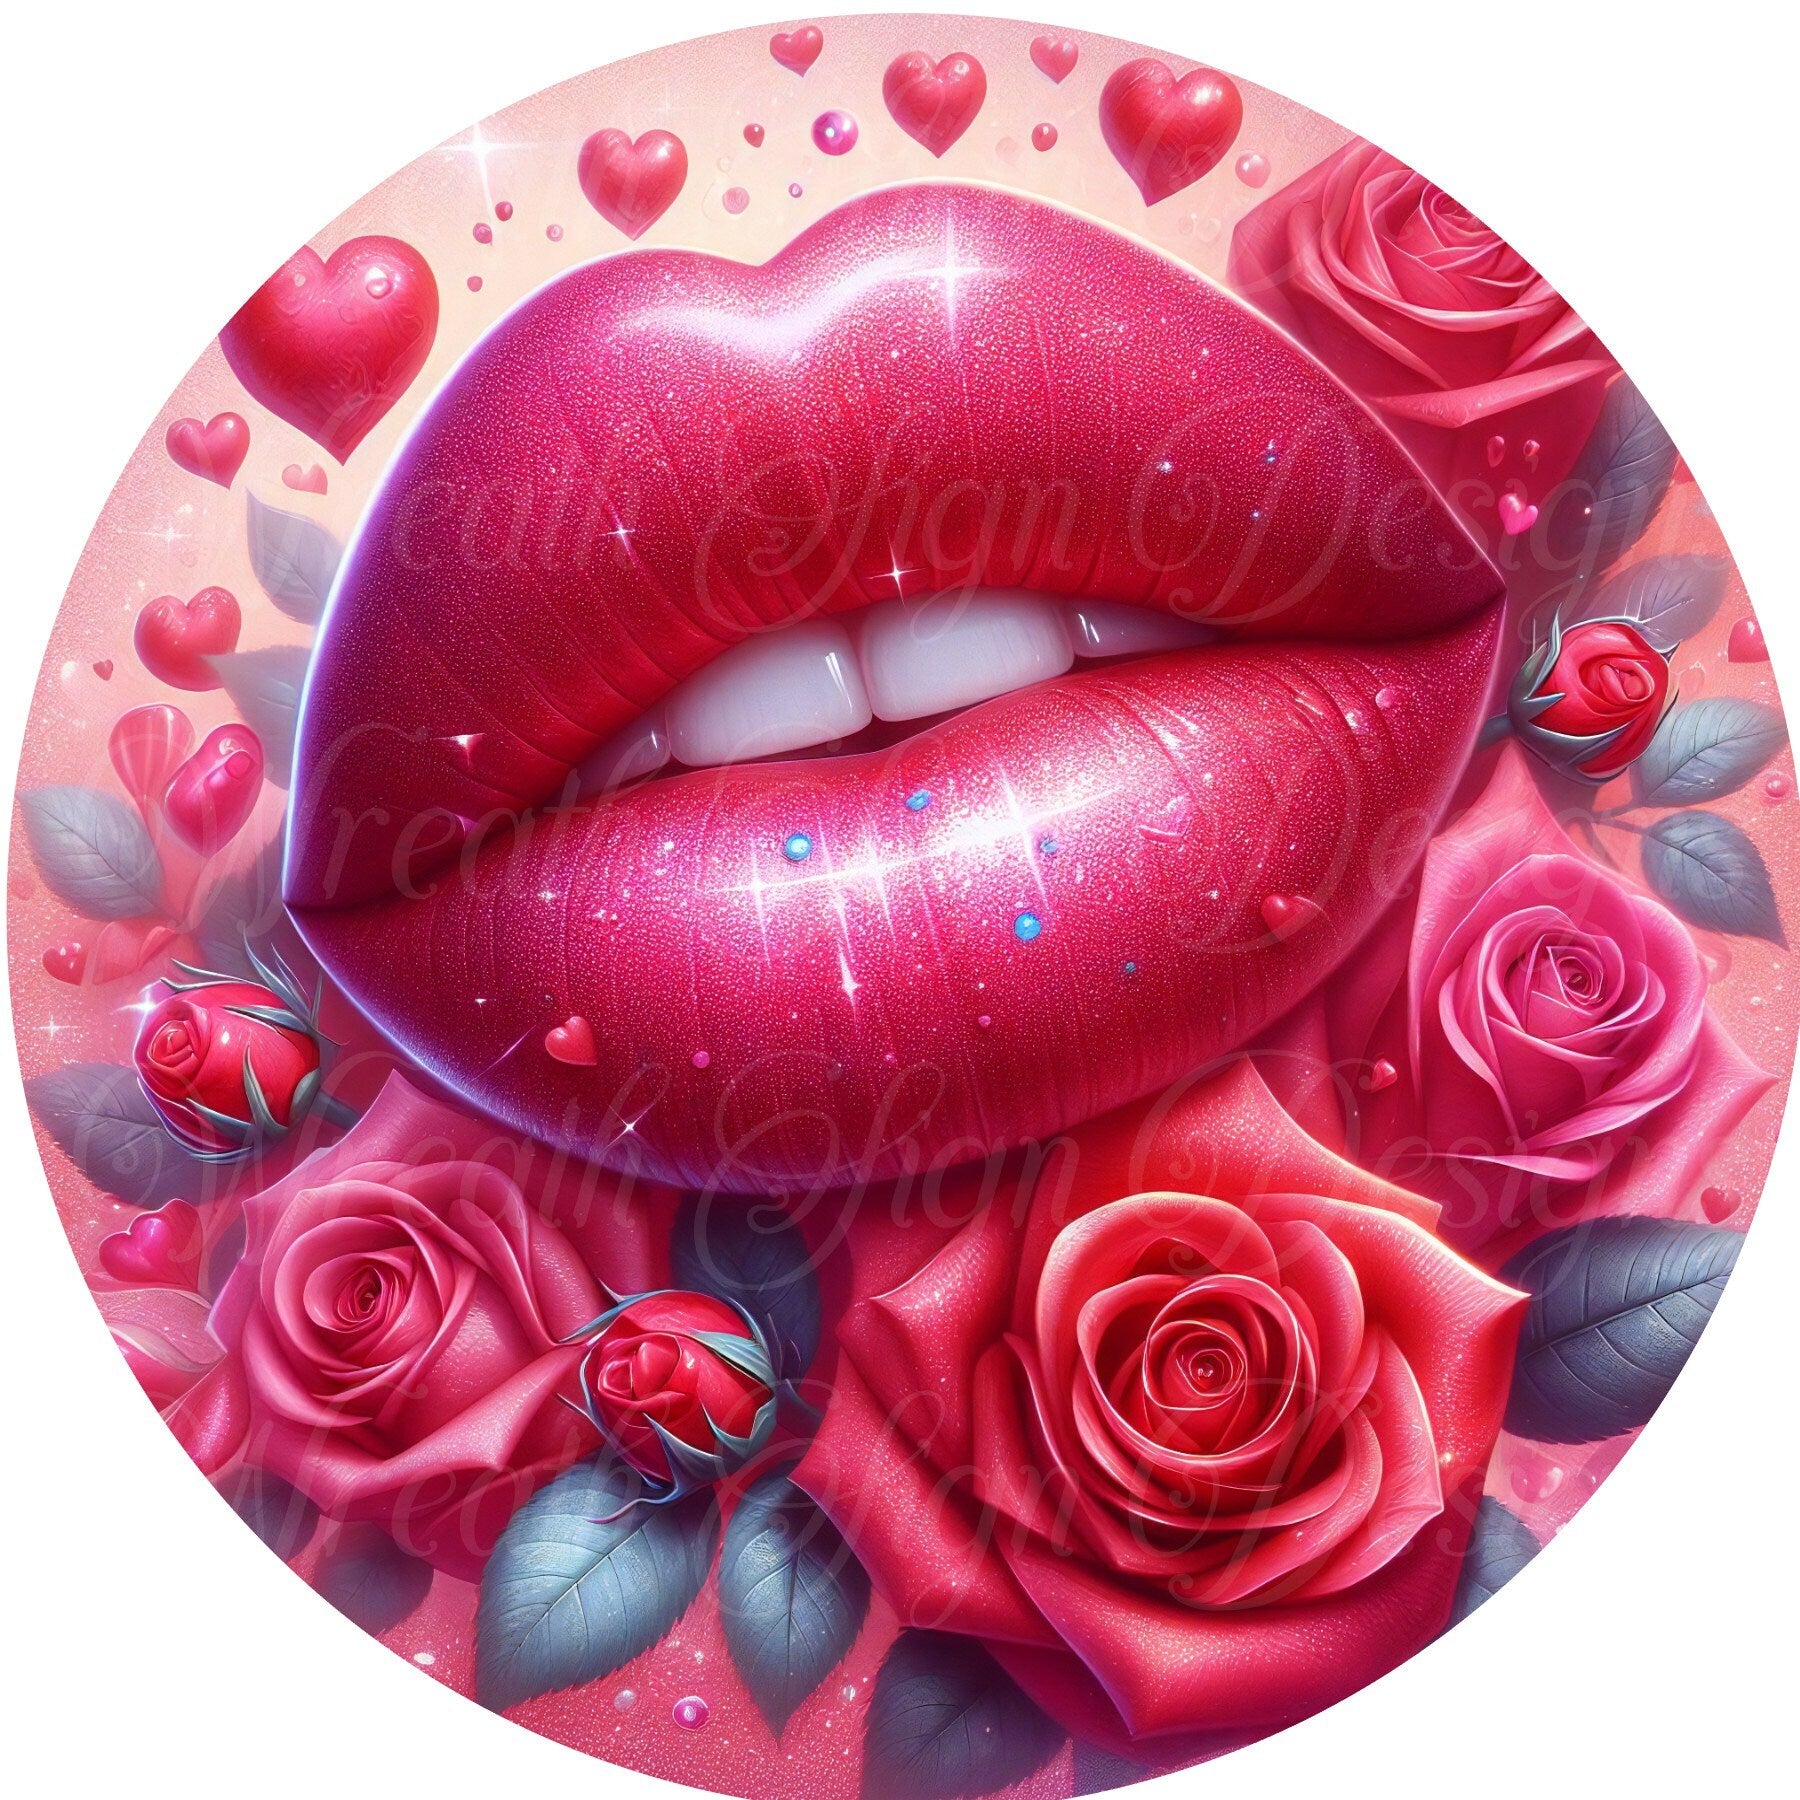 Valentine Wreath, Pink Valentines Day Wreath, Hot Pink Lips